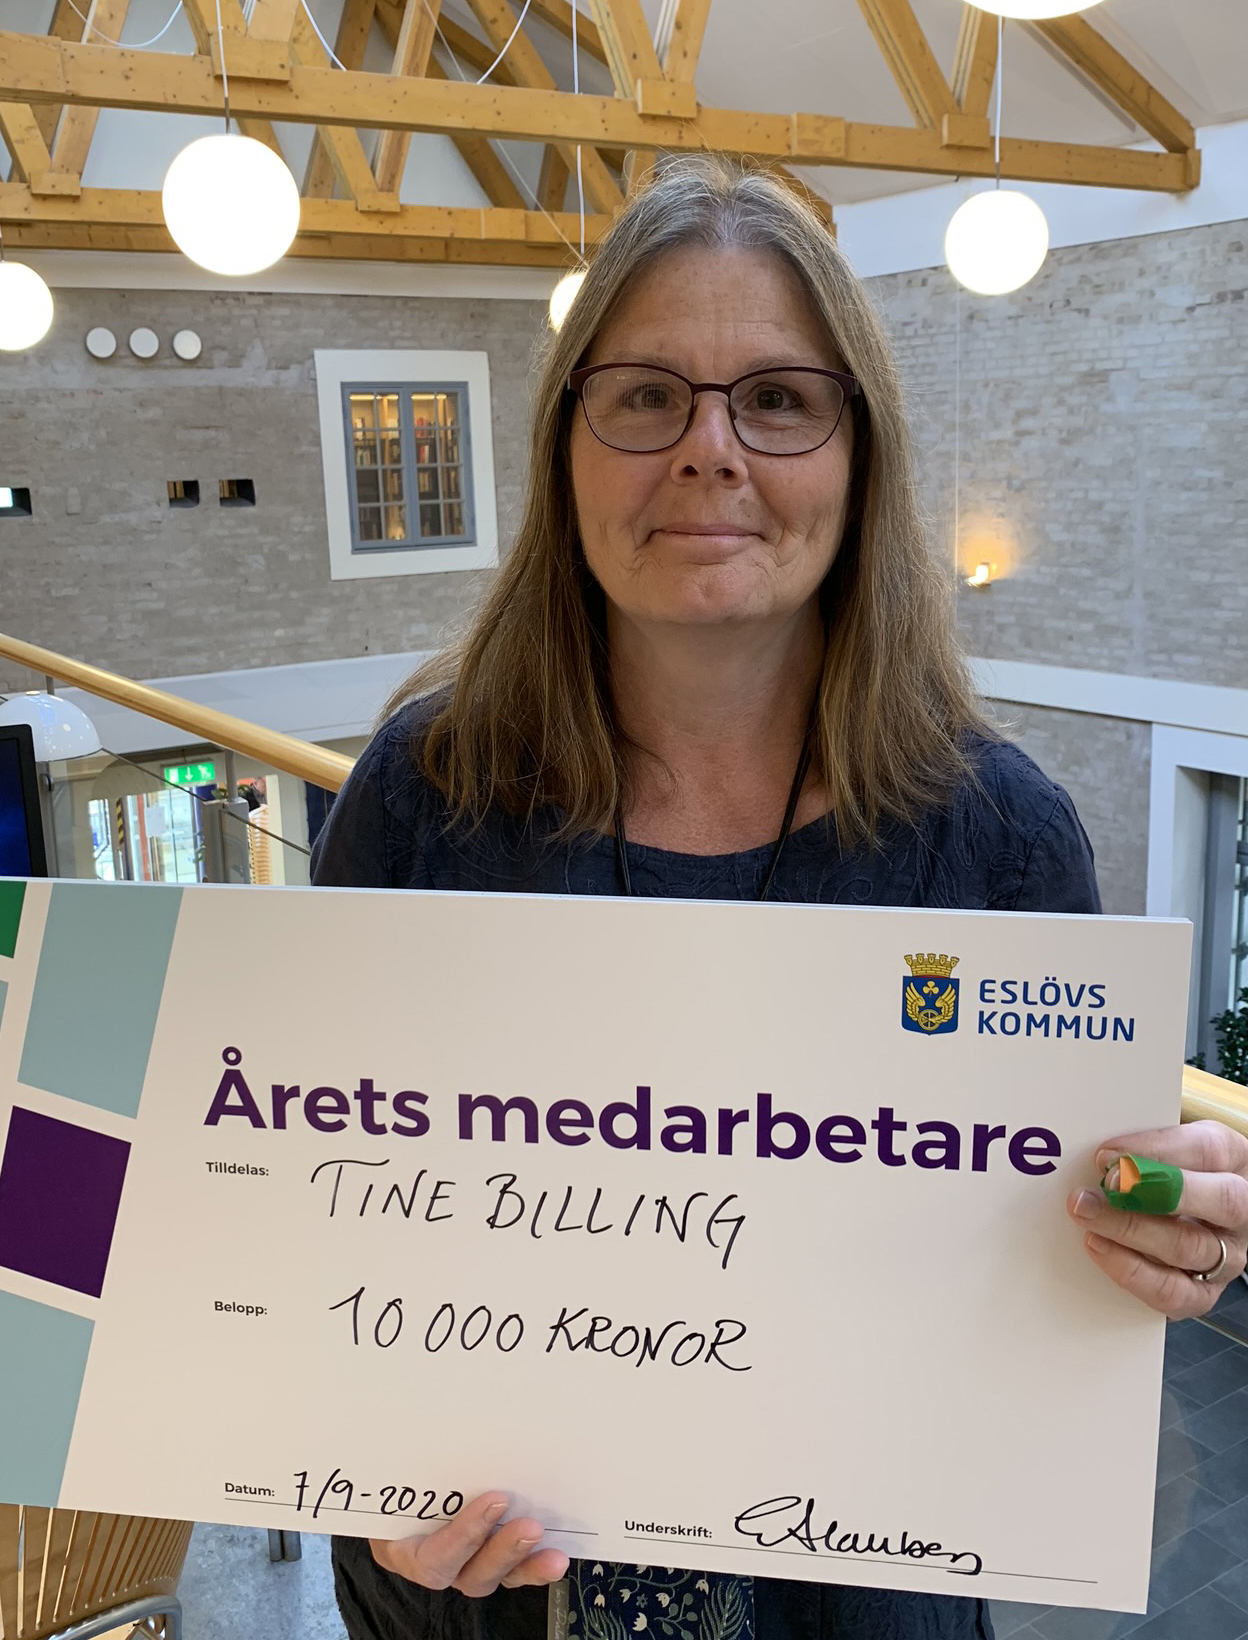 Tine Billing är Årets medarbetare i Eslövs kommun